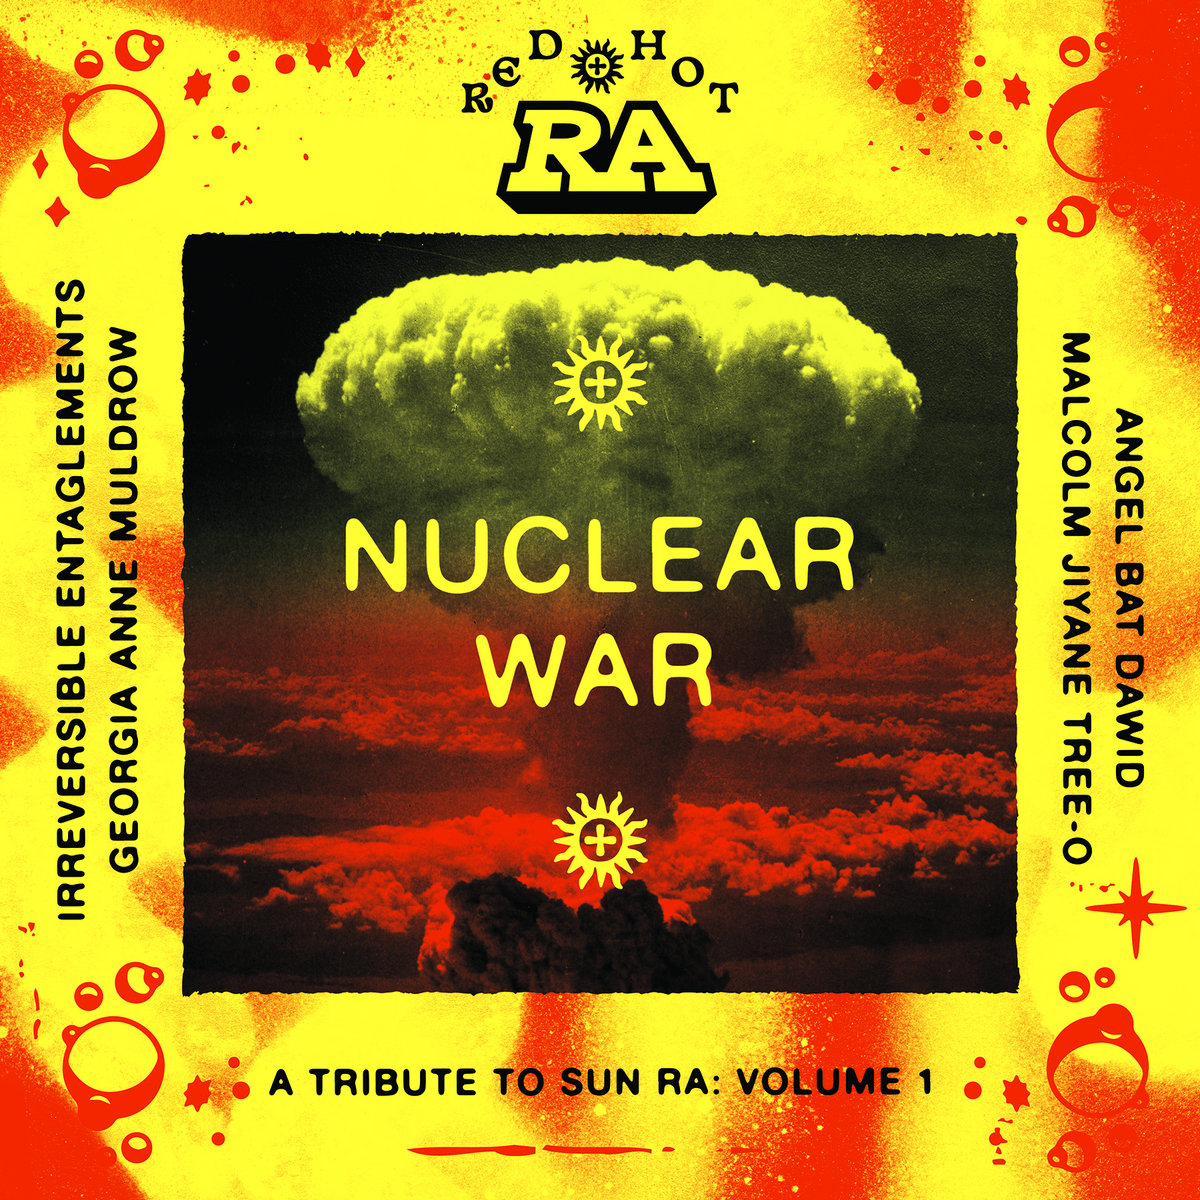 Sun Ra Nuclear War